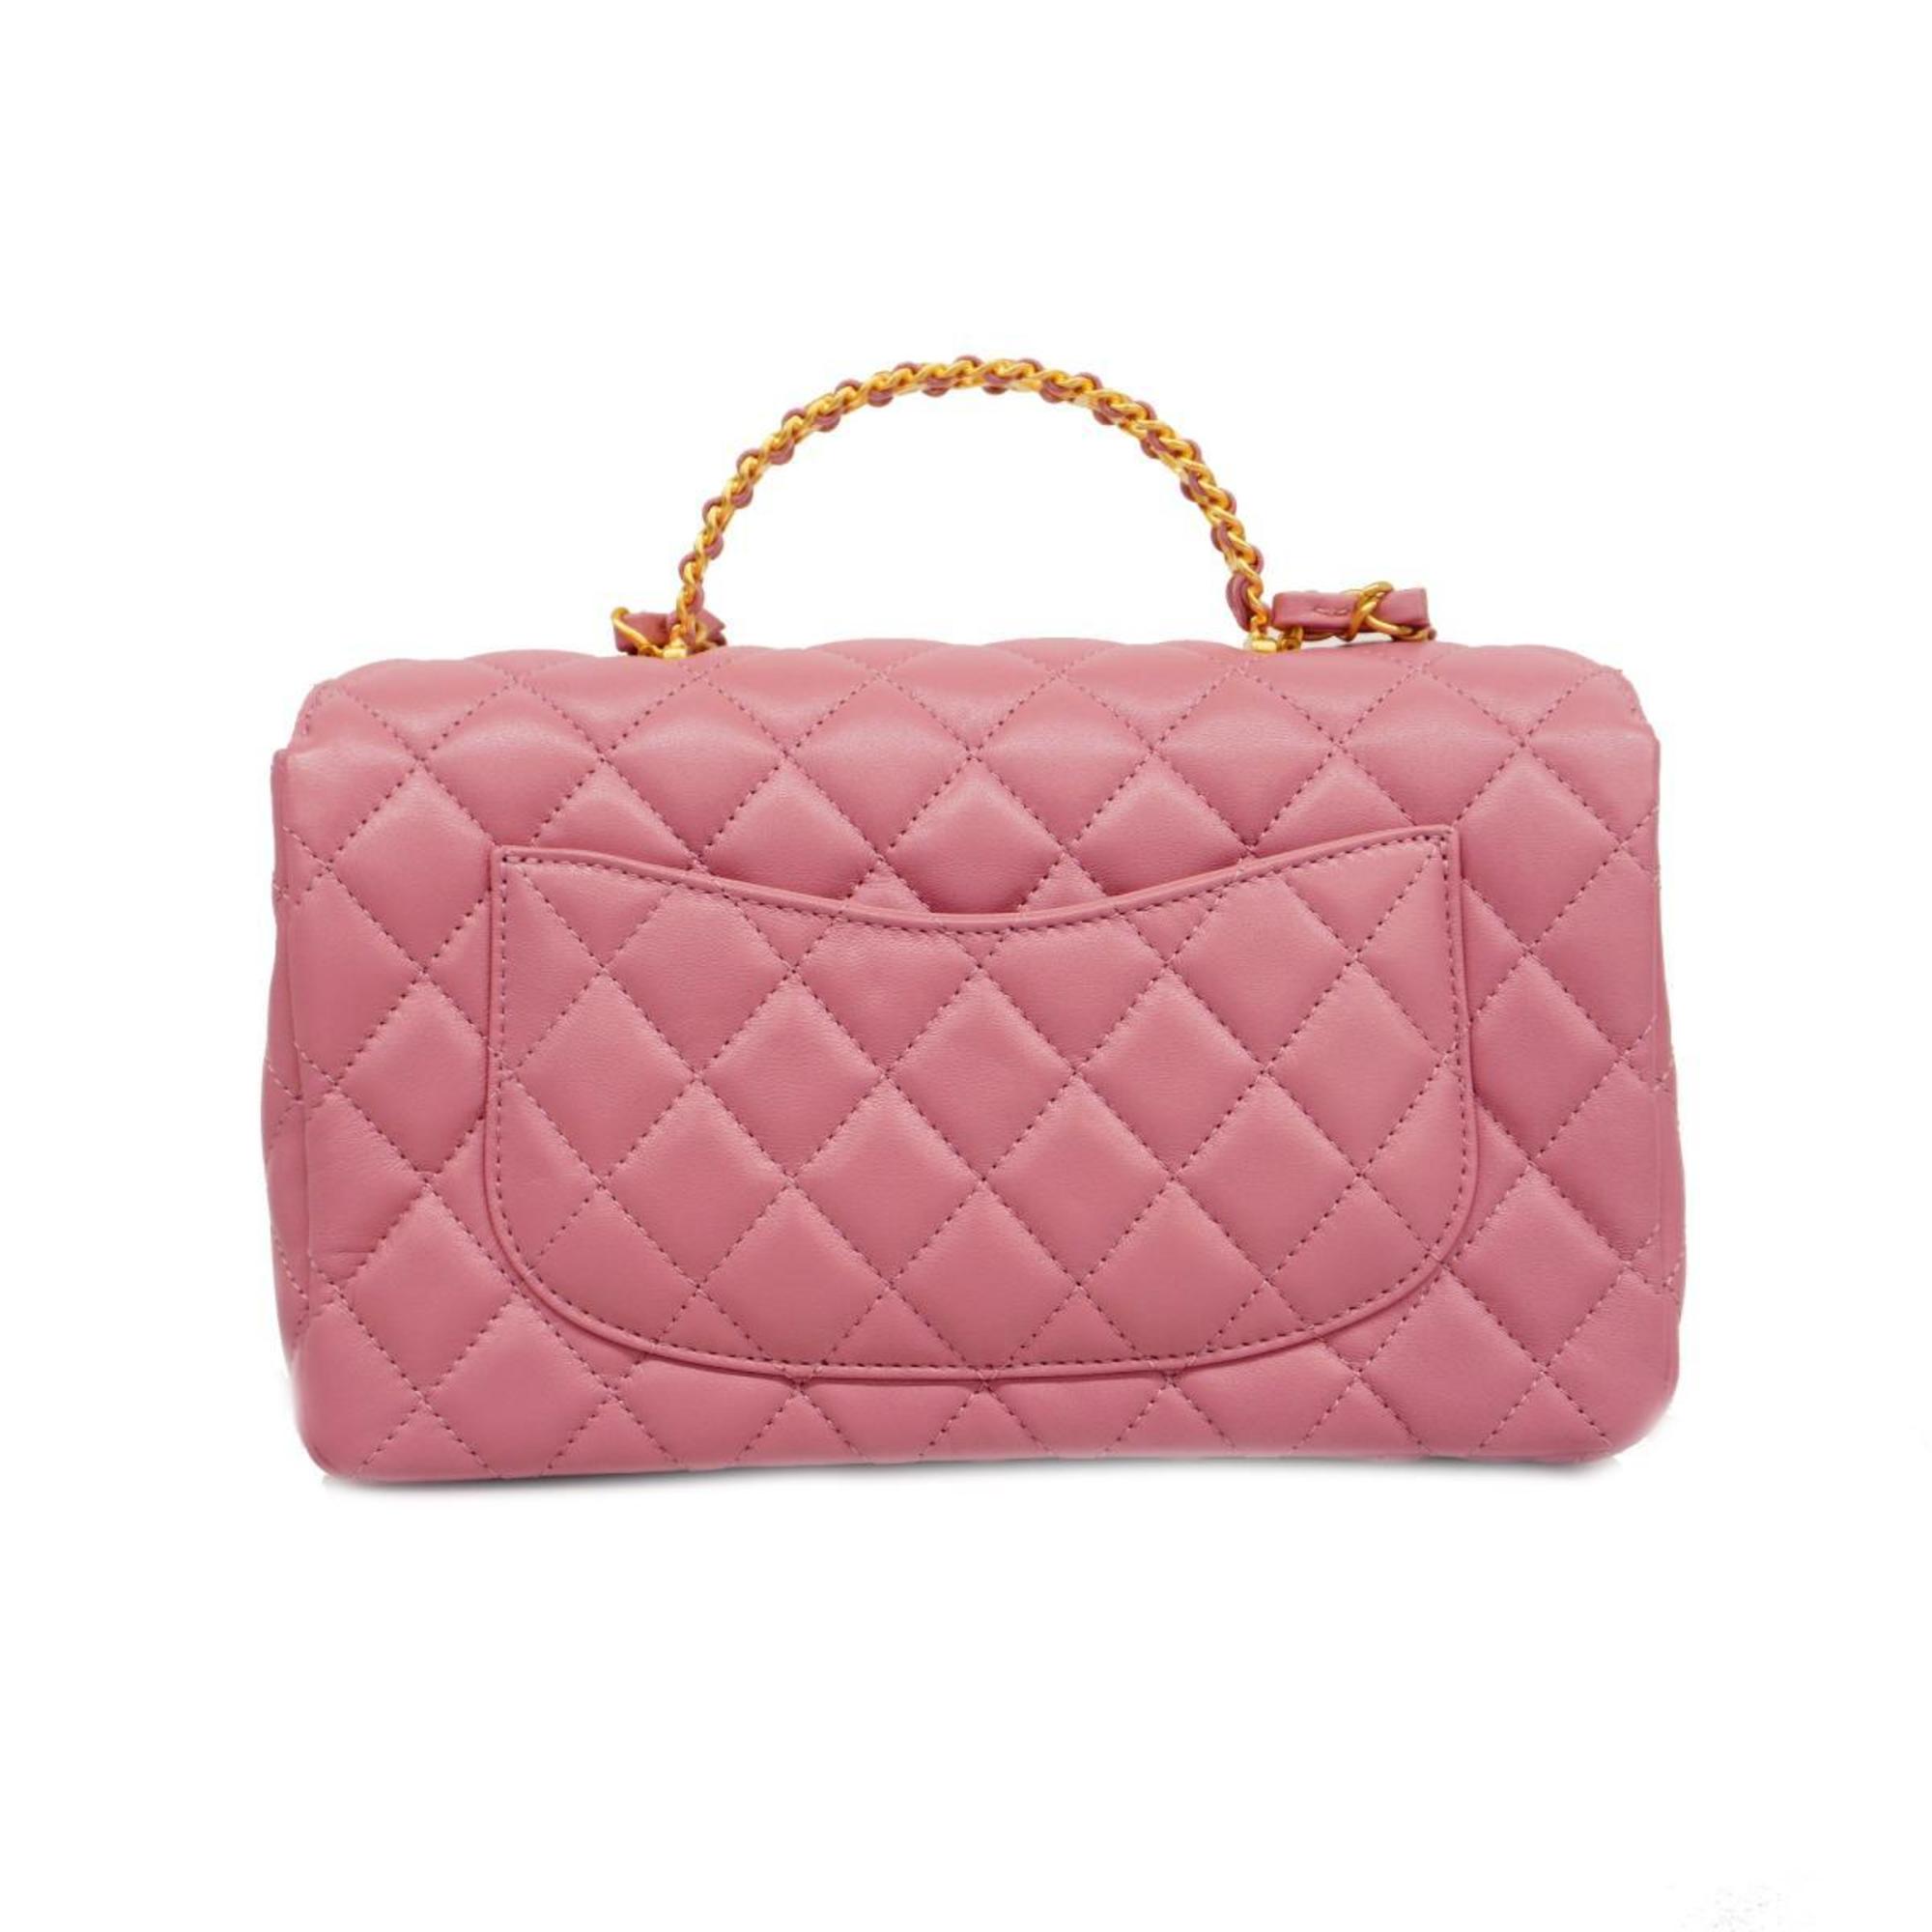 シャネル(Chanel) シャネル ハンドバッグ マトラッセ チェーンショルダー ラムスキン ピンク   レディース